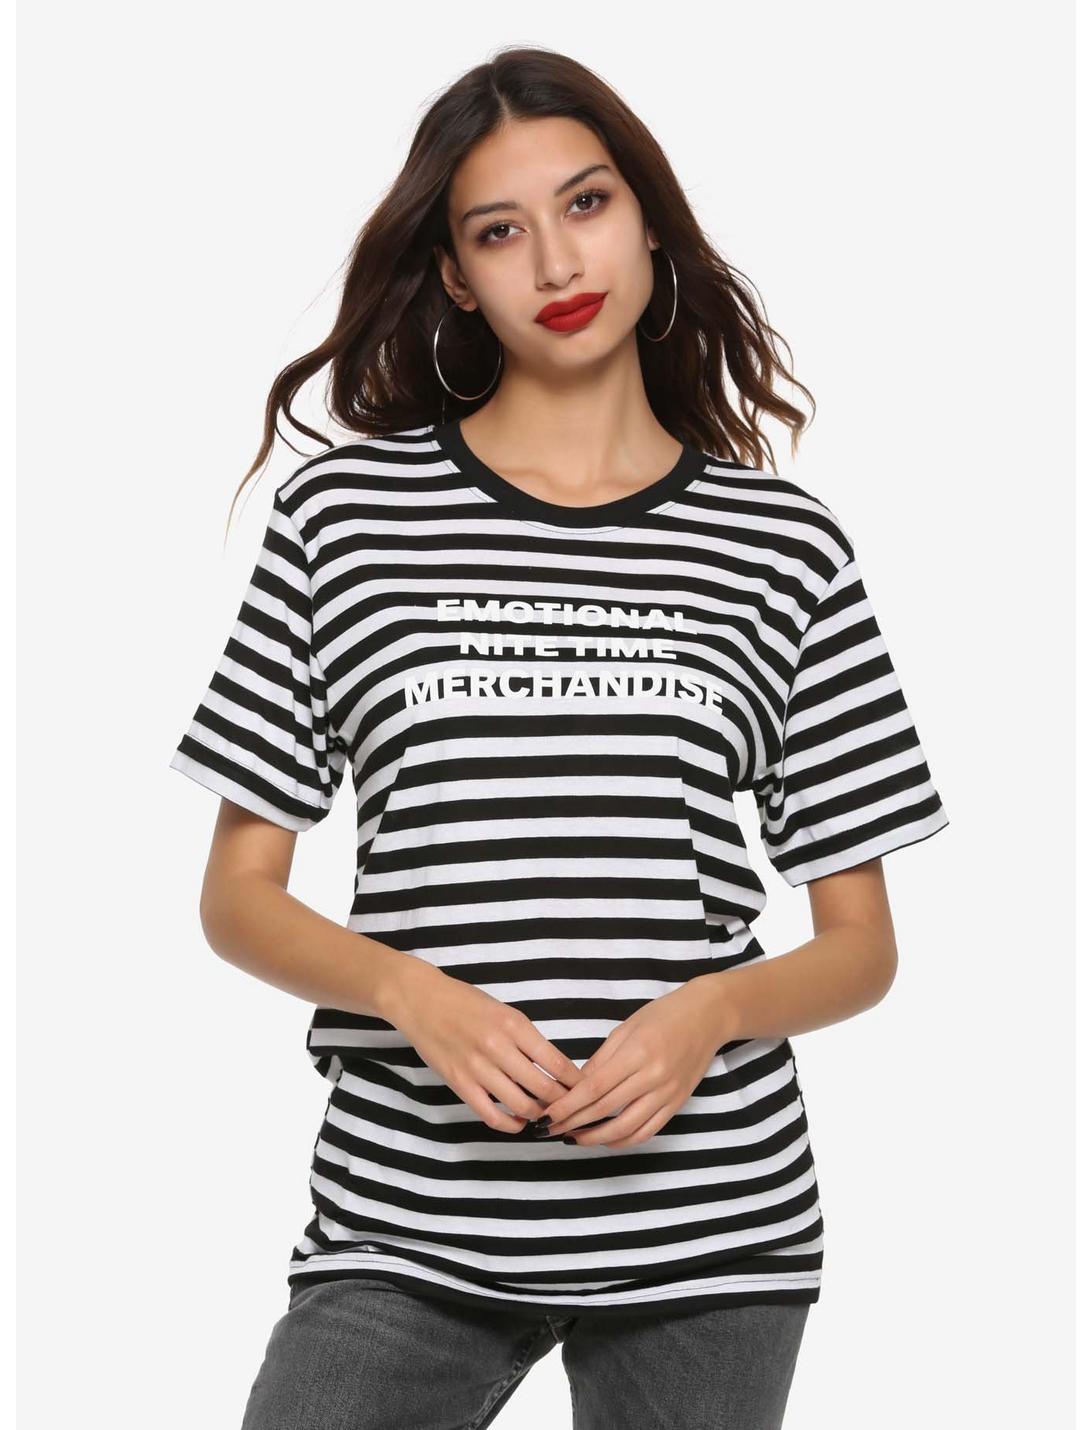 Emo Nite Emotional Nite Time Merchandise Striped Girls T-Shirt, WHITE, hi-res